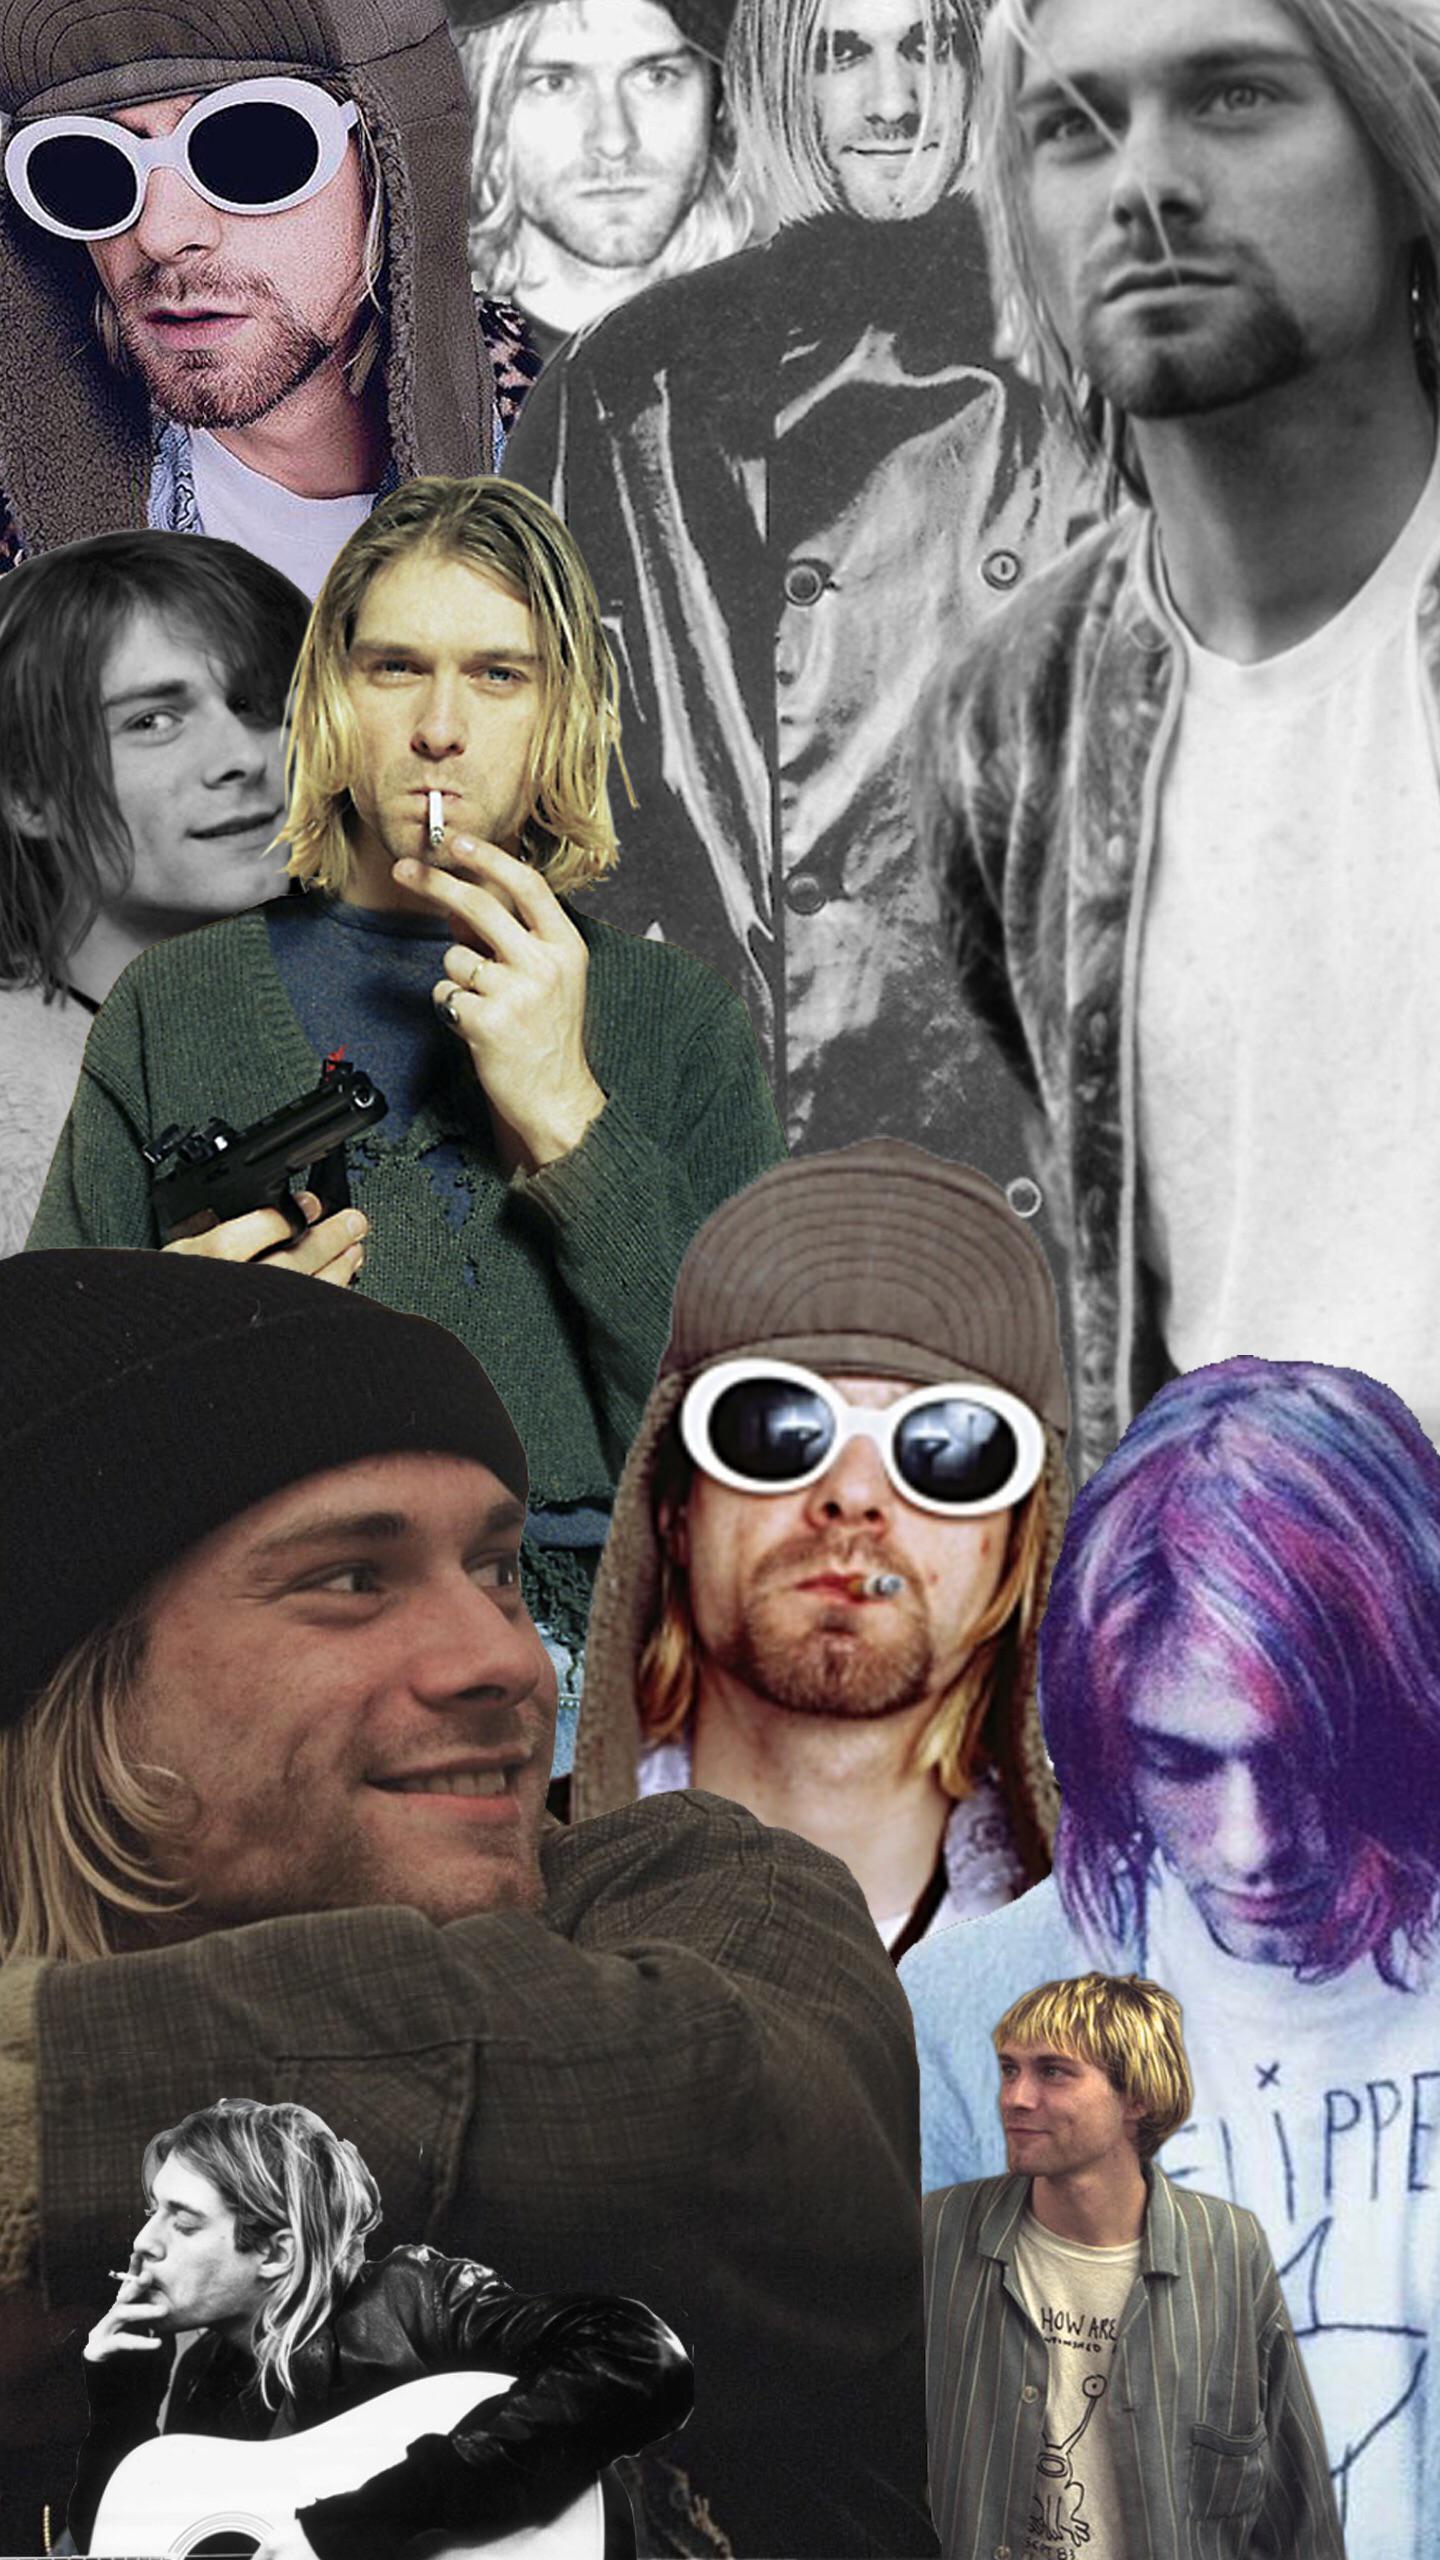 Kurt Cobain Wallpapers Top Free Kurt Cobain Backgrounds Wallpaperaccess